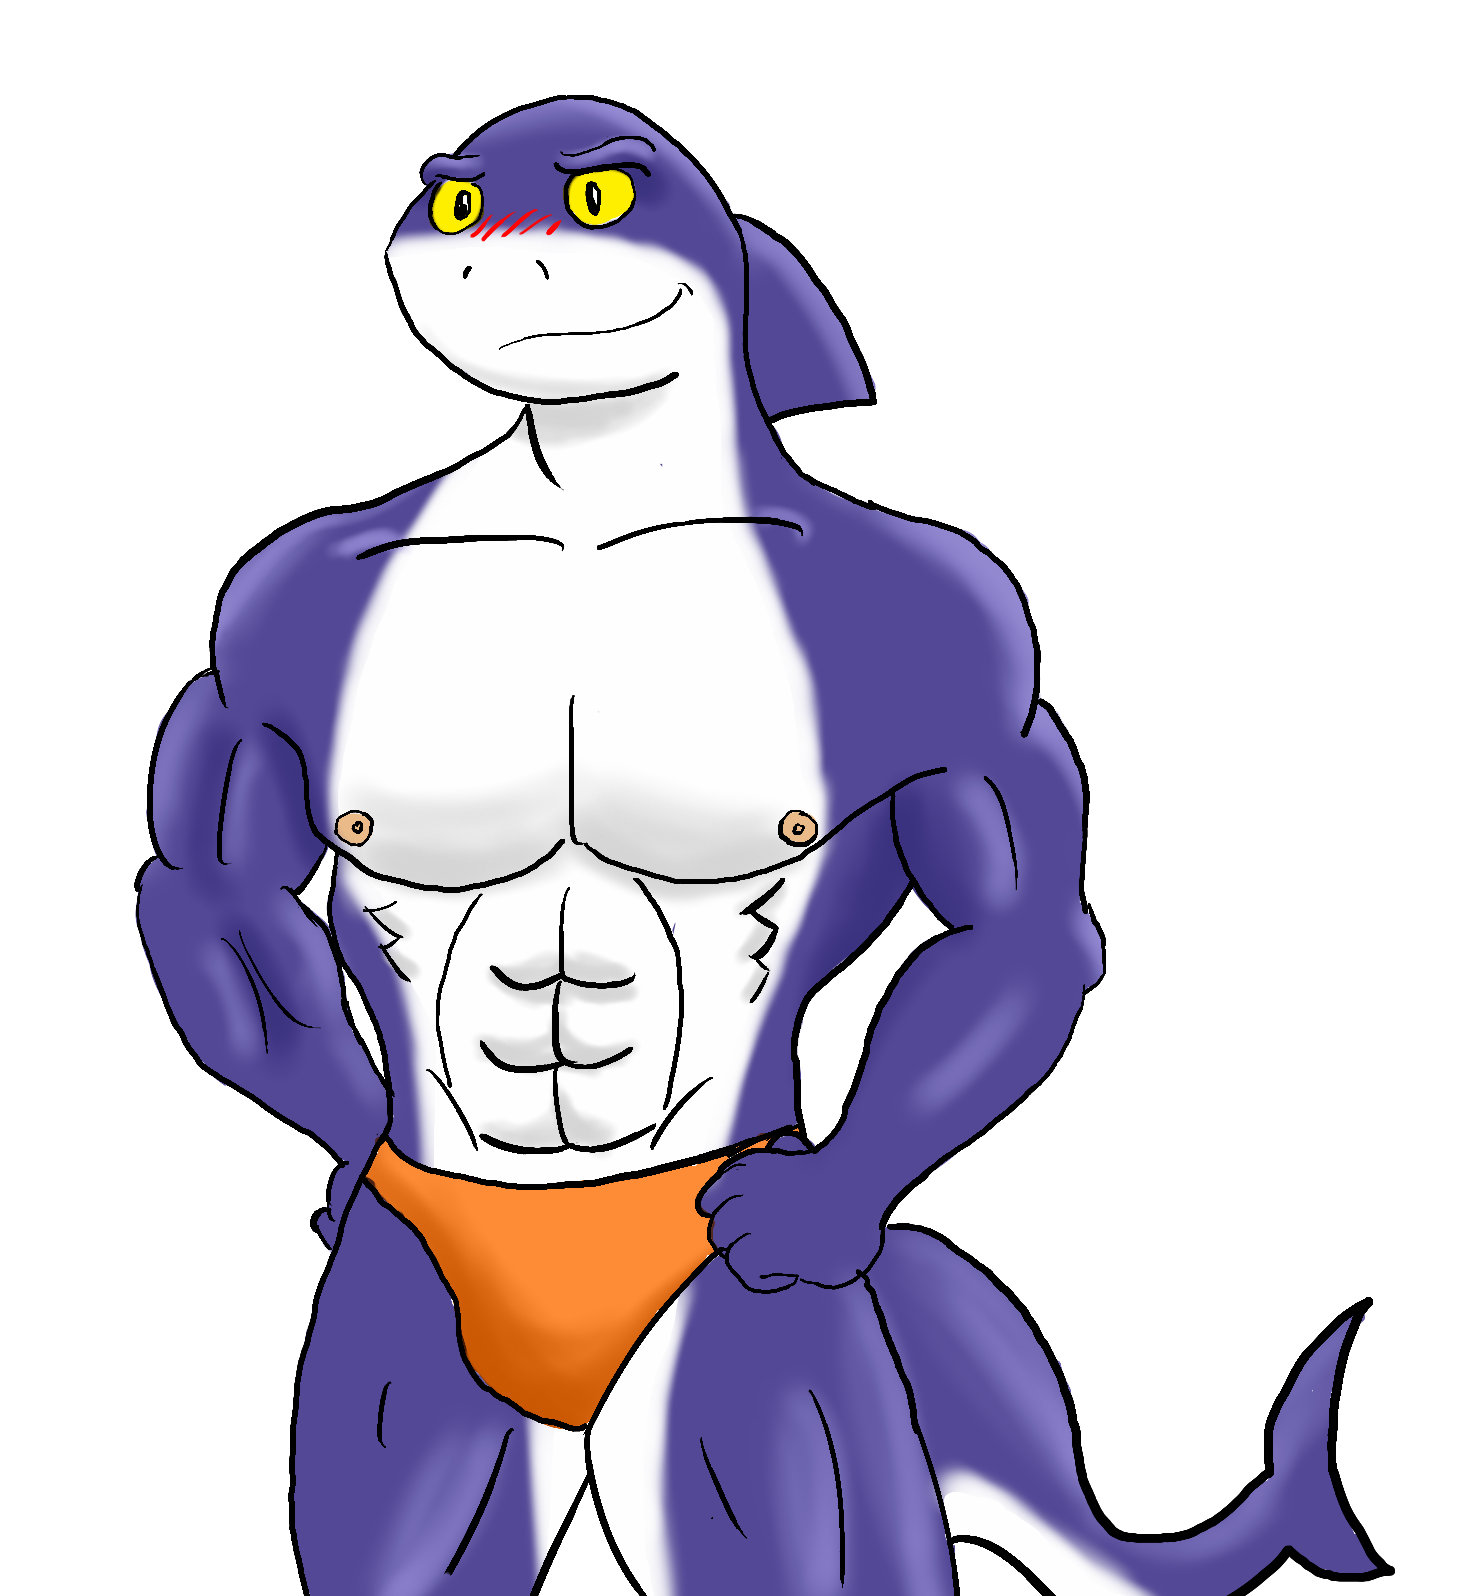 clipart shark muscular